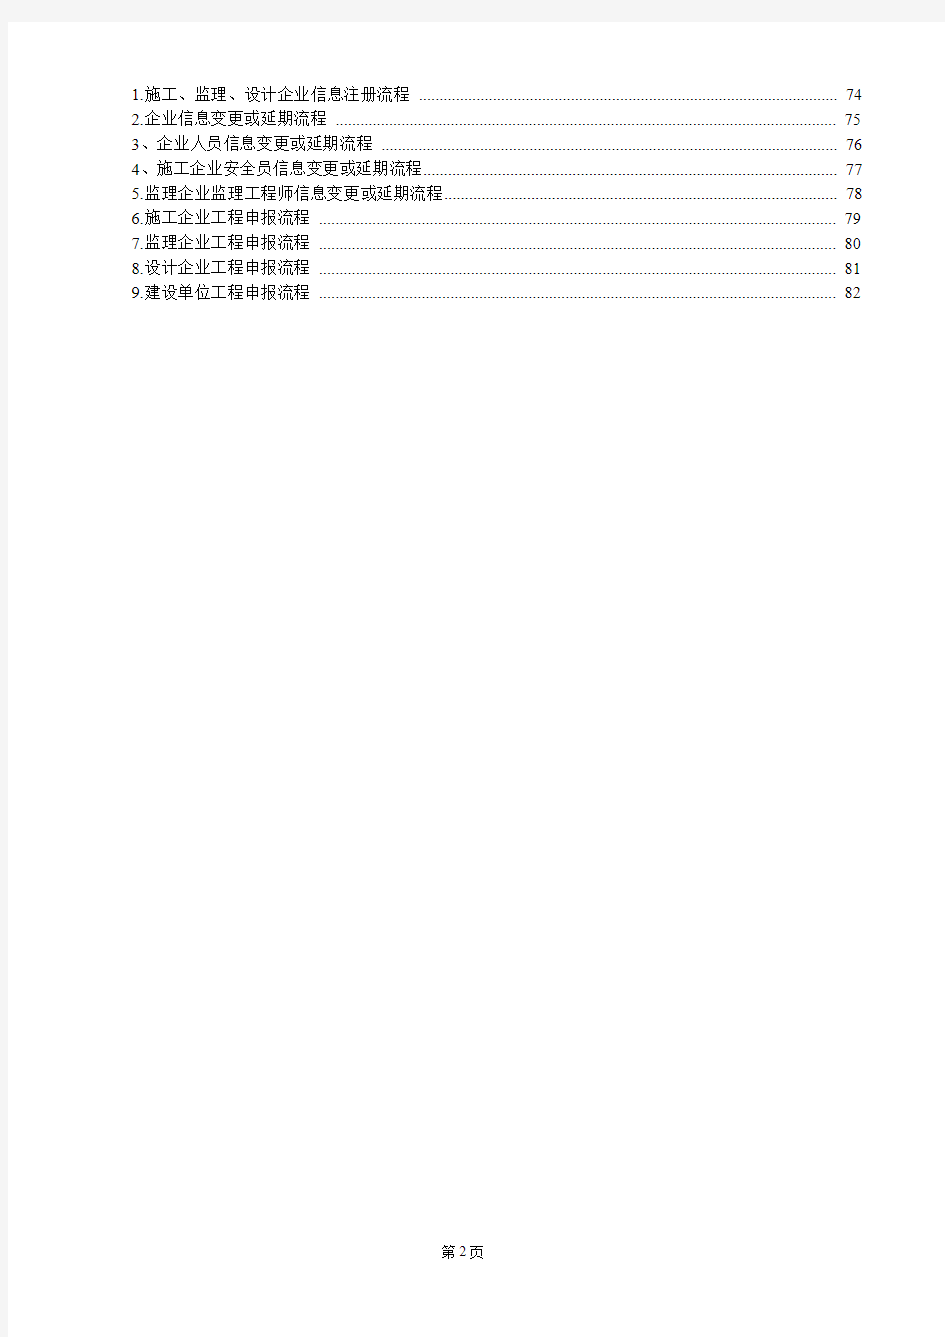 河北通信建设信息管理系统操作手册-企业2015-12-21